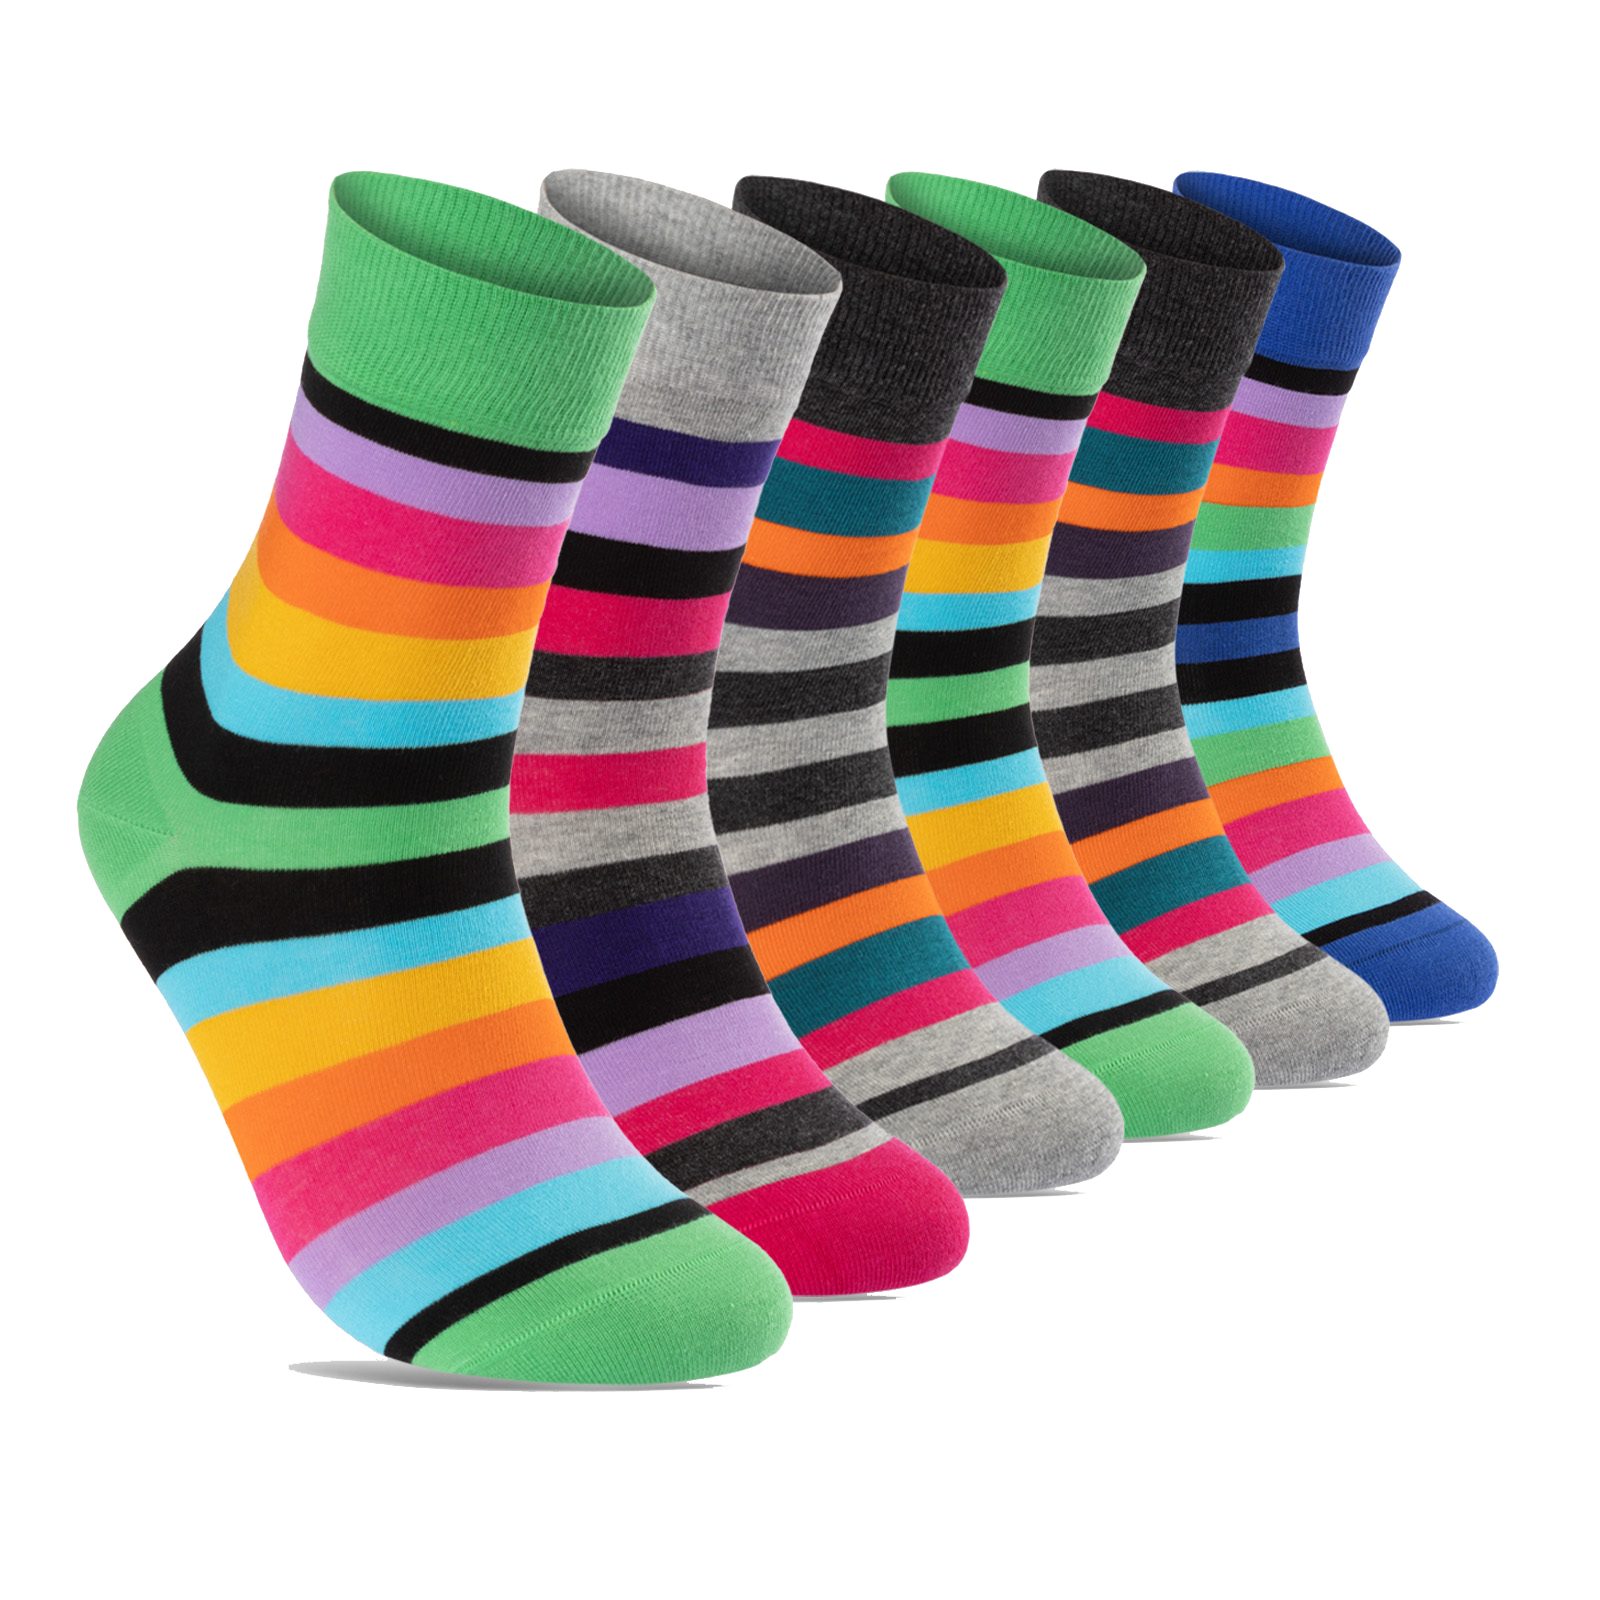 sockenkauf24 Basicsocken 6 oder 12 Paar Damen Socken Ringel Bunt (6-Paar,  35-38) Baumwolle Komfortbund ohne Naht - 11979